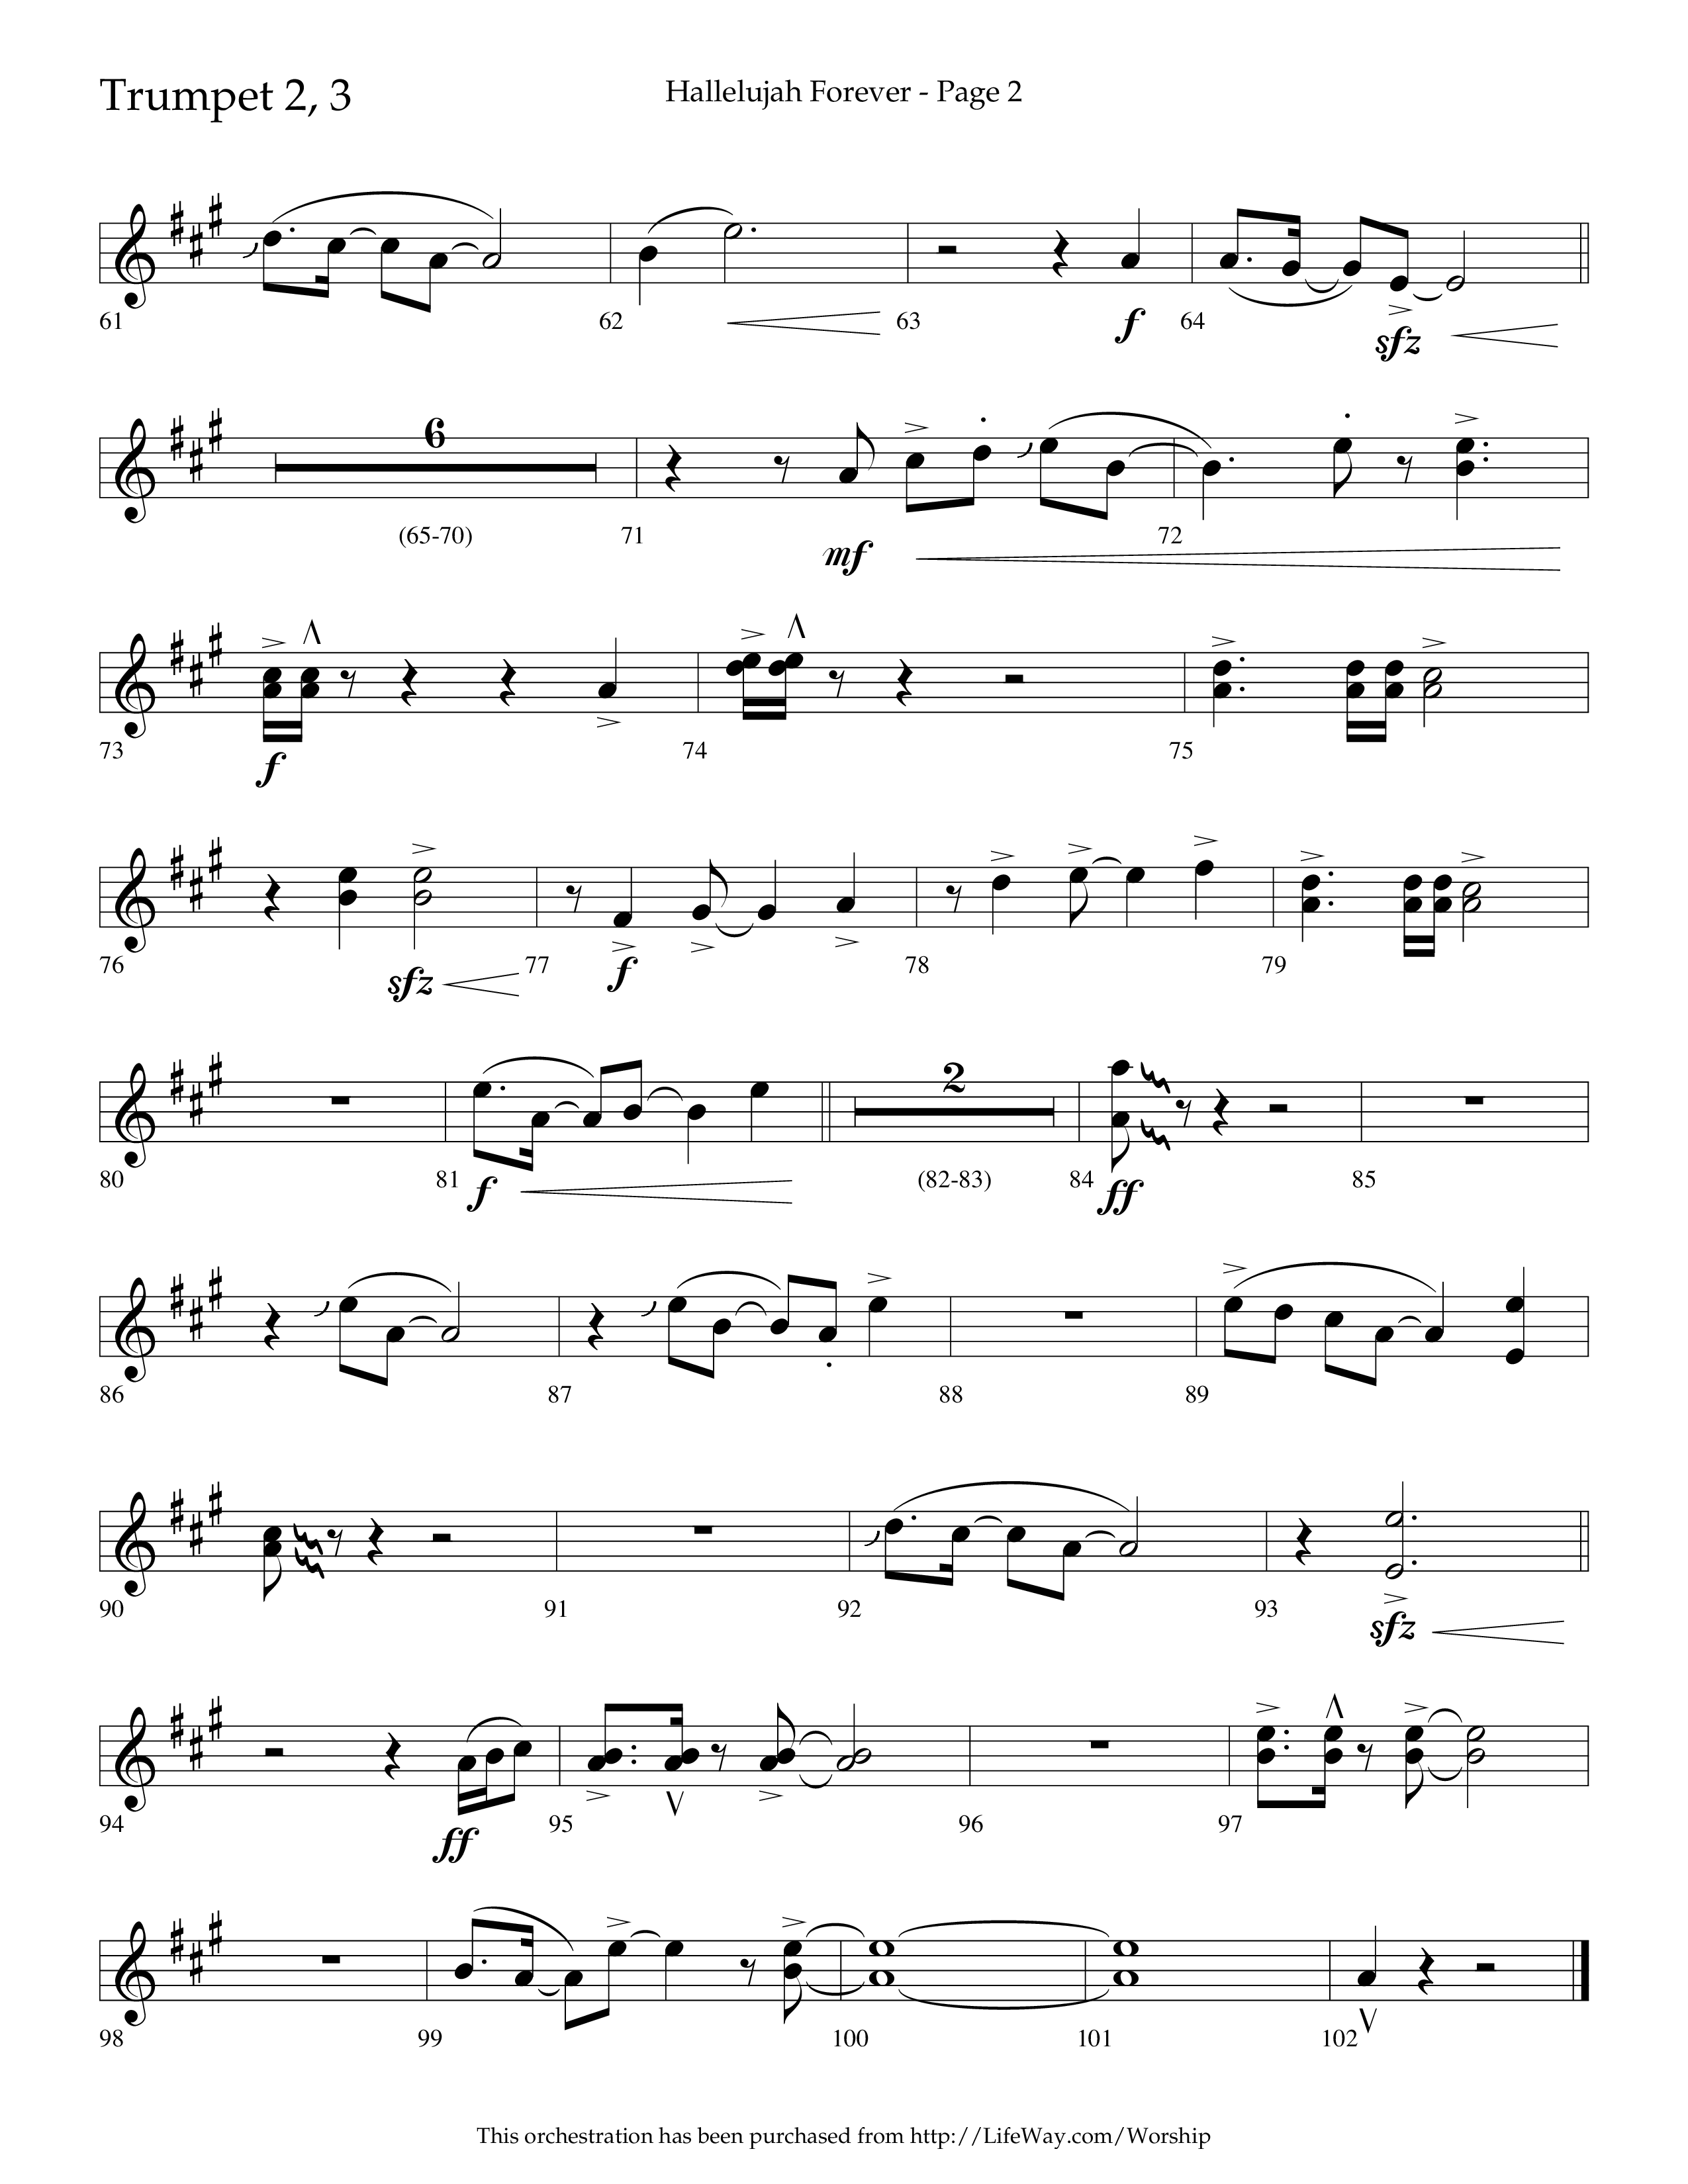 Hallelujah Forever (Choral Anthem SATB) Trumpet 2/3 (Lifeway Choral / Arr. Cliff Duren)